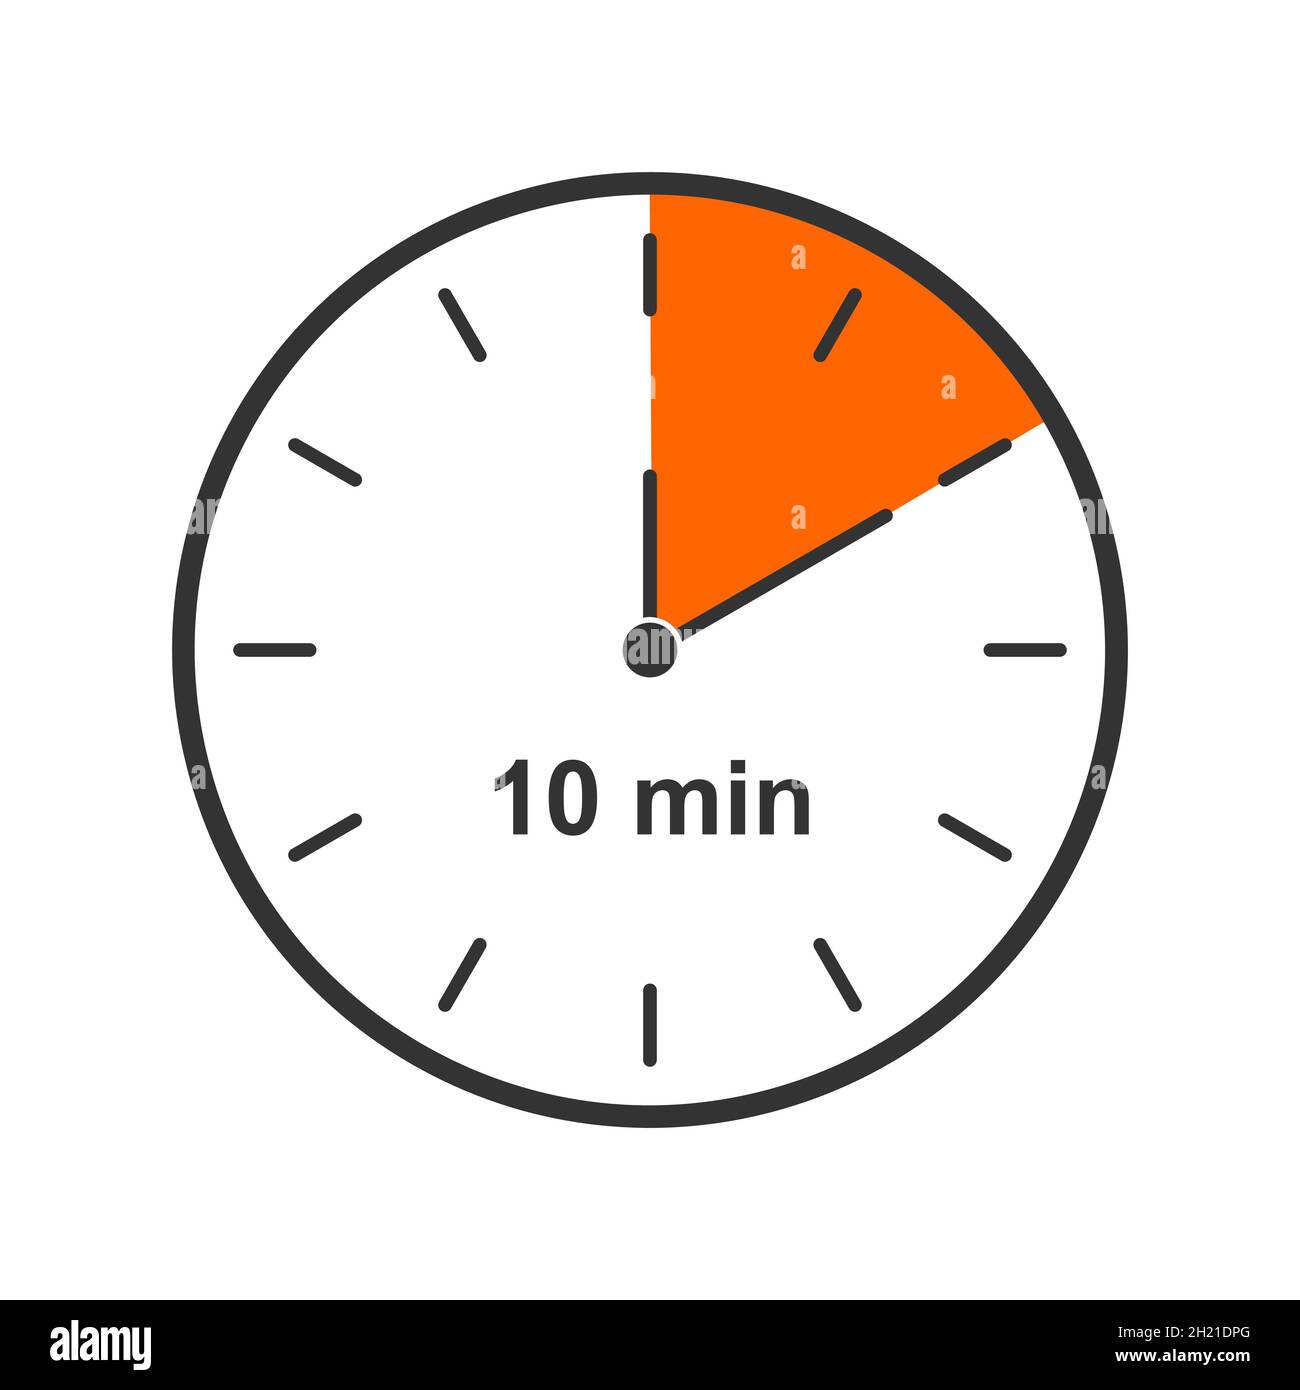 Uhrsymbol mit einem Zeitintervall von 10 Minuten. Countdown-Timer oder  Stoppuhrsymbol auf weißem Hintergrund isoliert. Infografik-Element für  Kochen oder Sportspiele. Vektorgrafik flach Stock-Vektorgrafik - Alamy